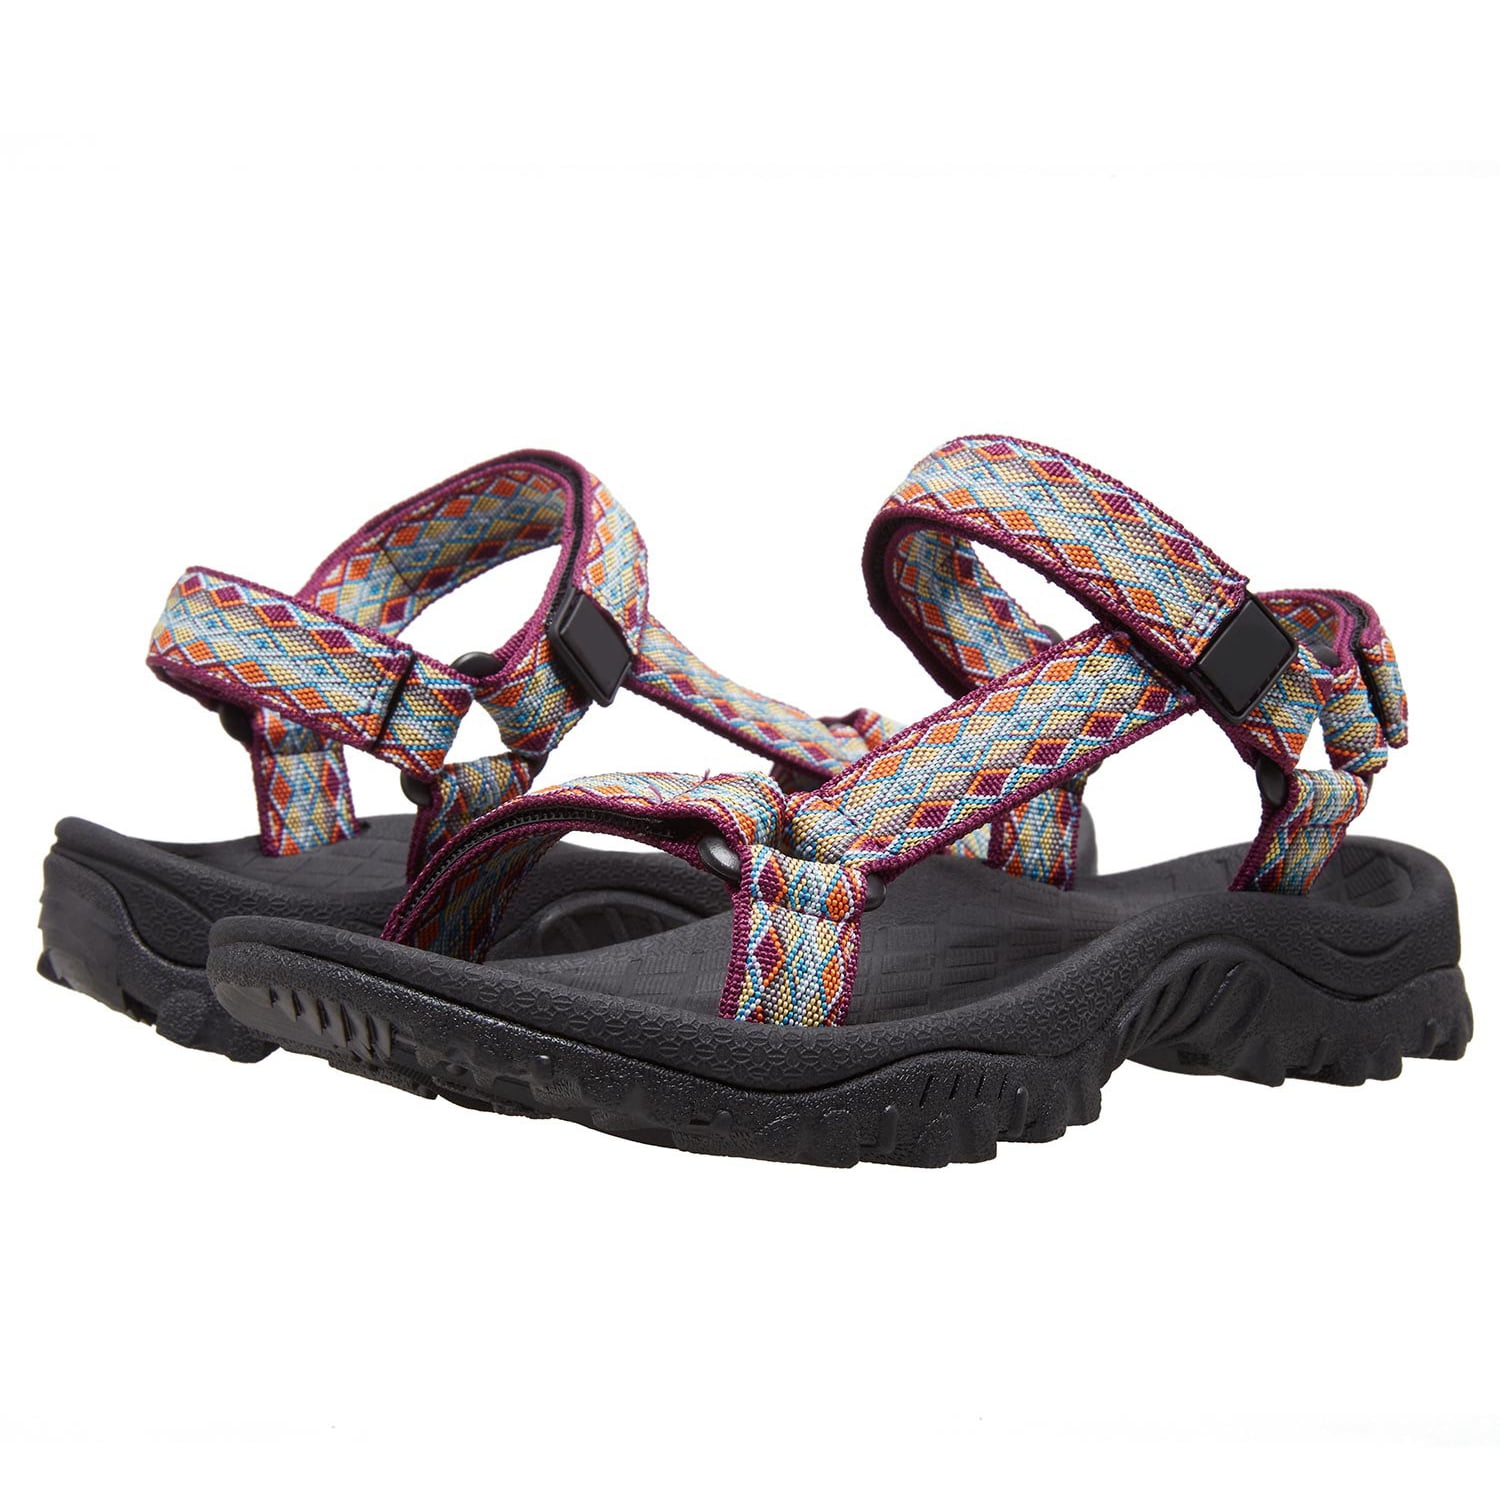 OutPro Women's Hiking Sandals Lightweight Casual Trekking Sandals ...